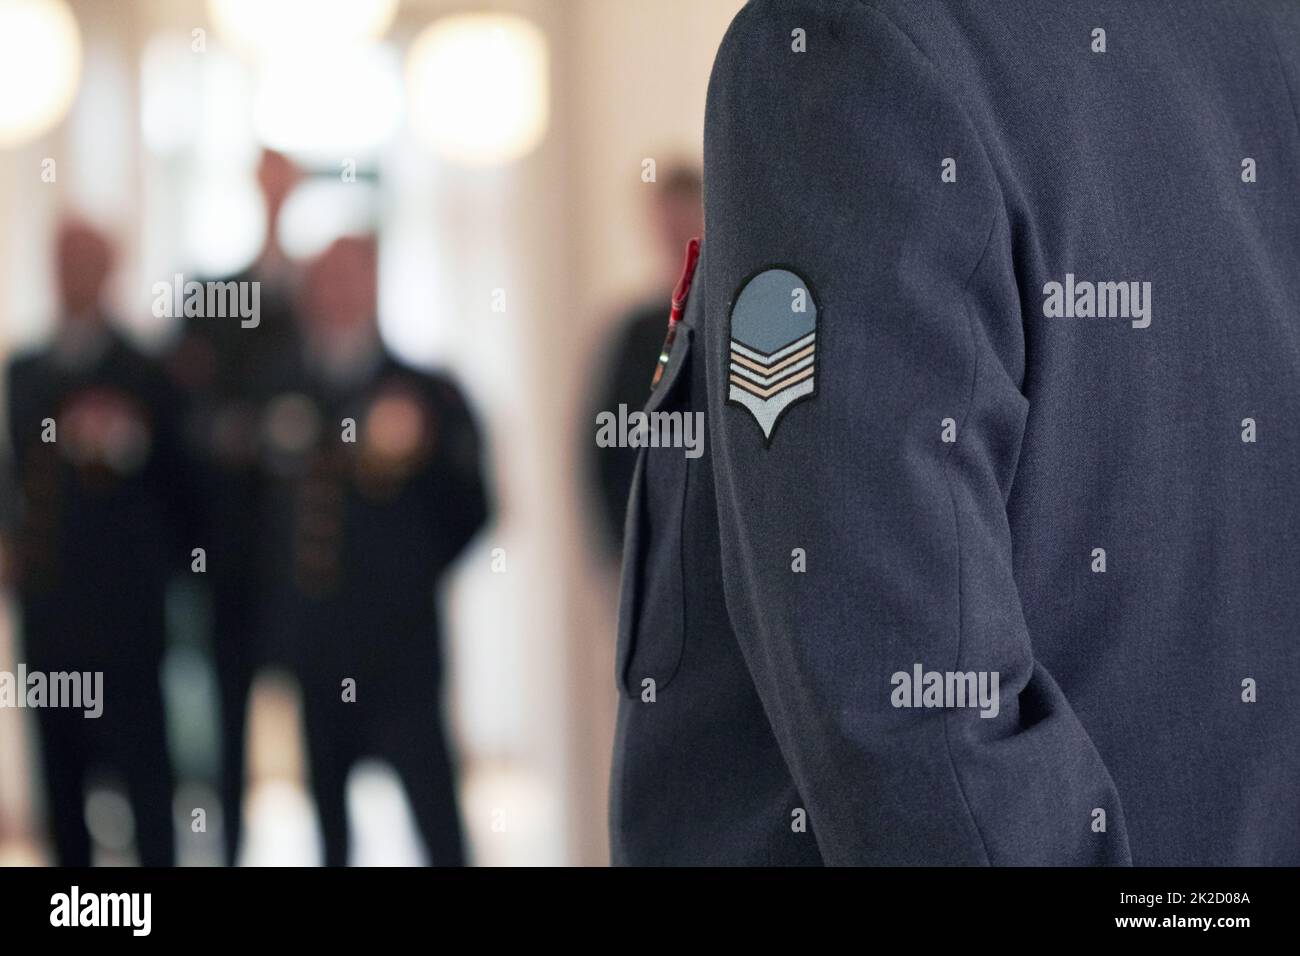 Disponibile e capace di difendere. Scatto di un distintivo militare su una giacca ufficiale di alto rango. Foto Stock